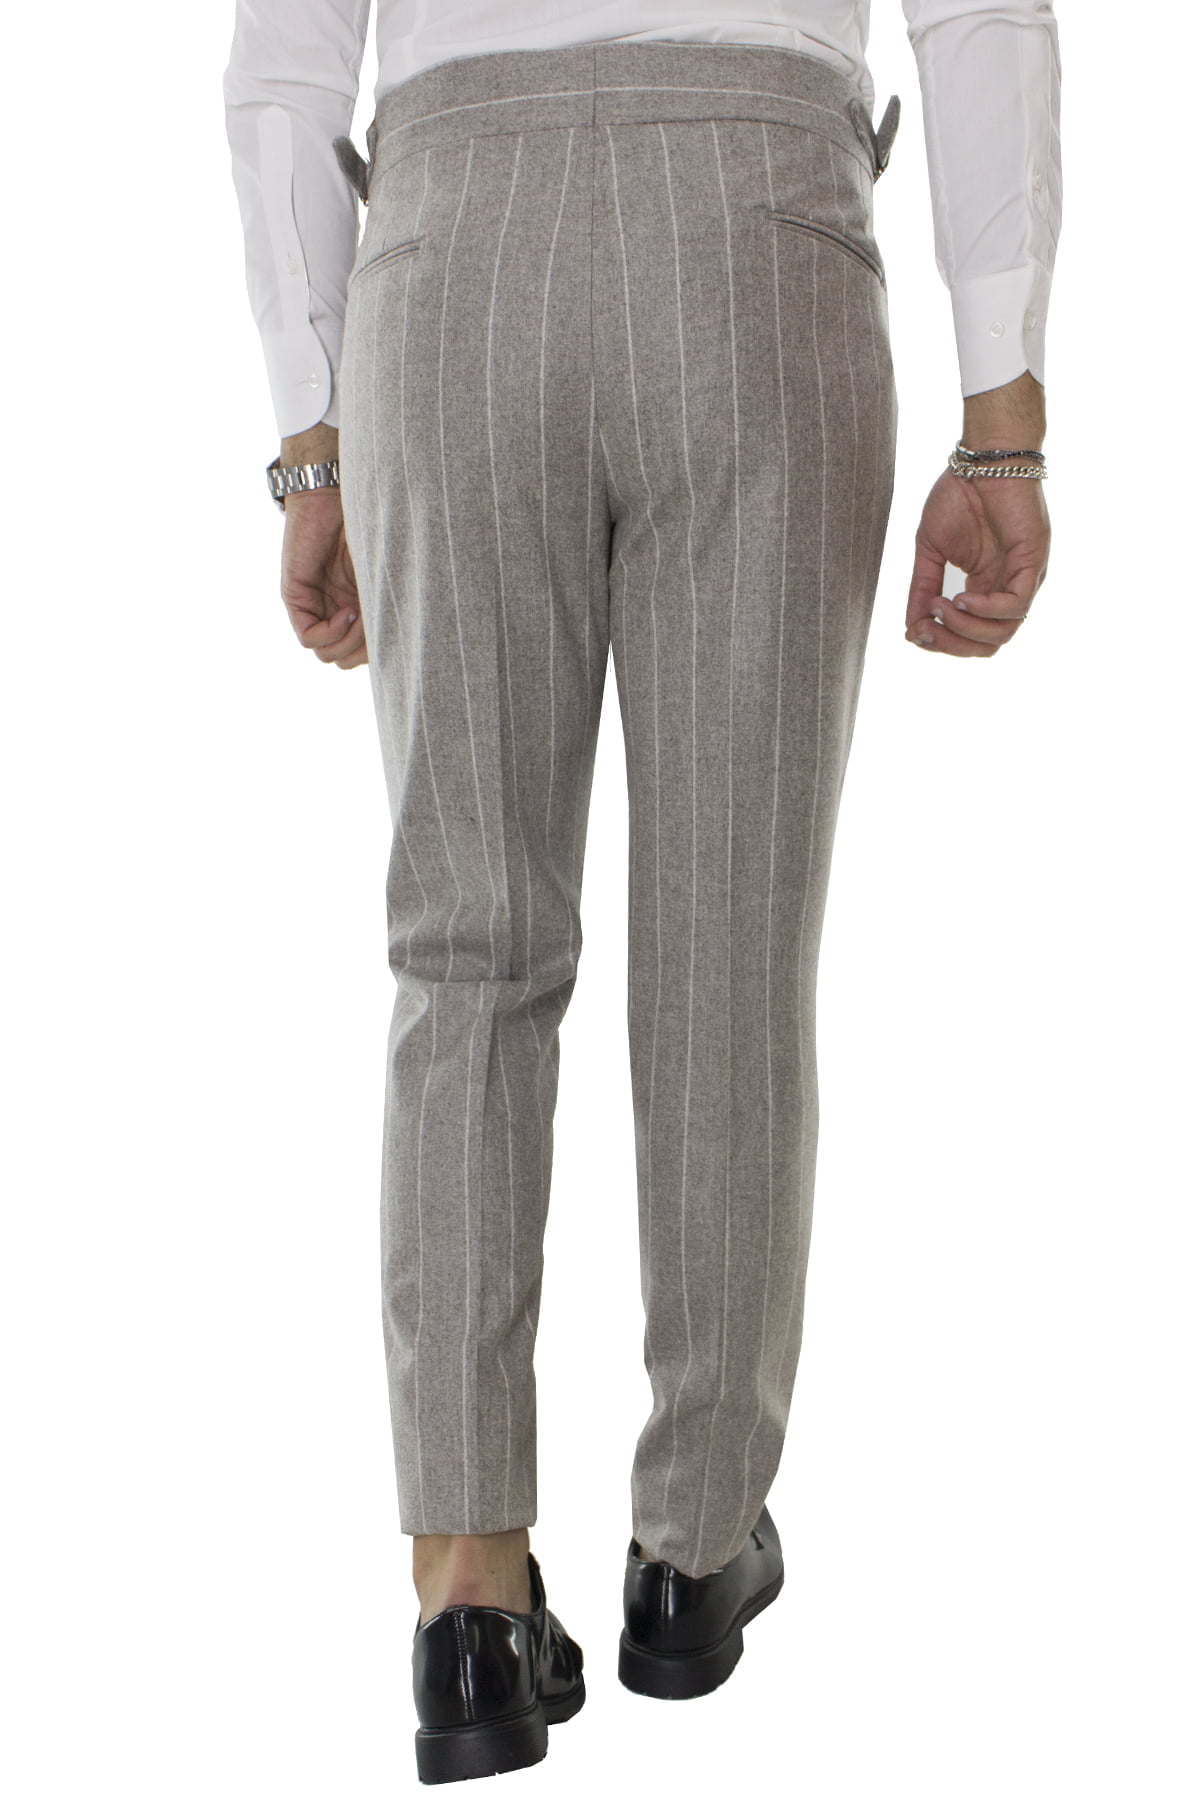 Pantalone uomo tortora gessato in lana vita alta con pinces e fibbie laterali vitale barberis canonico